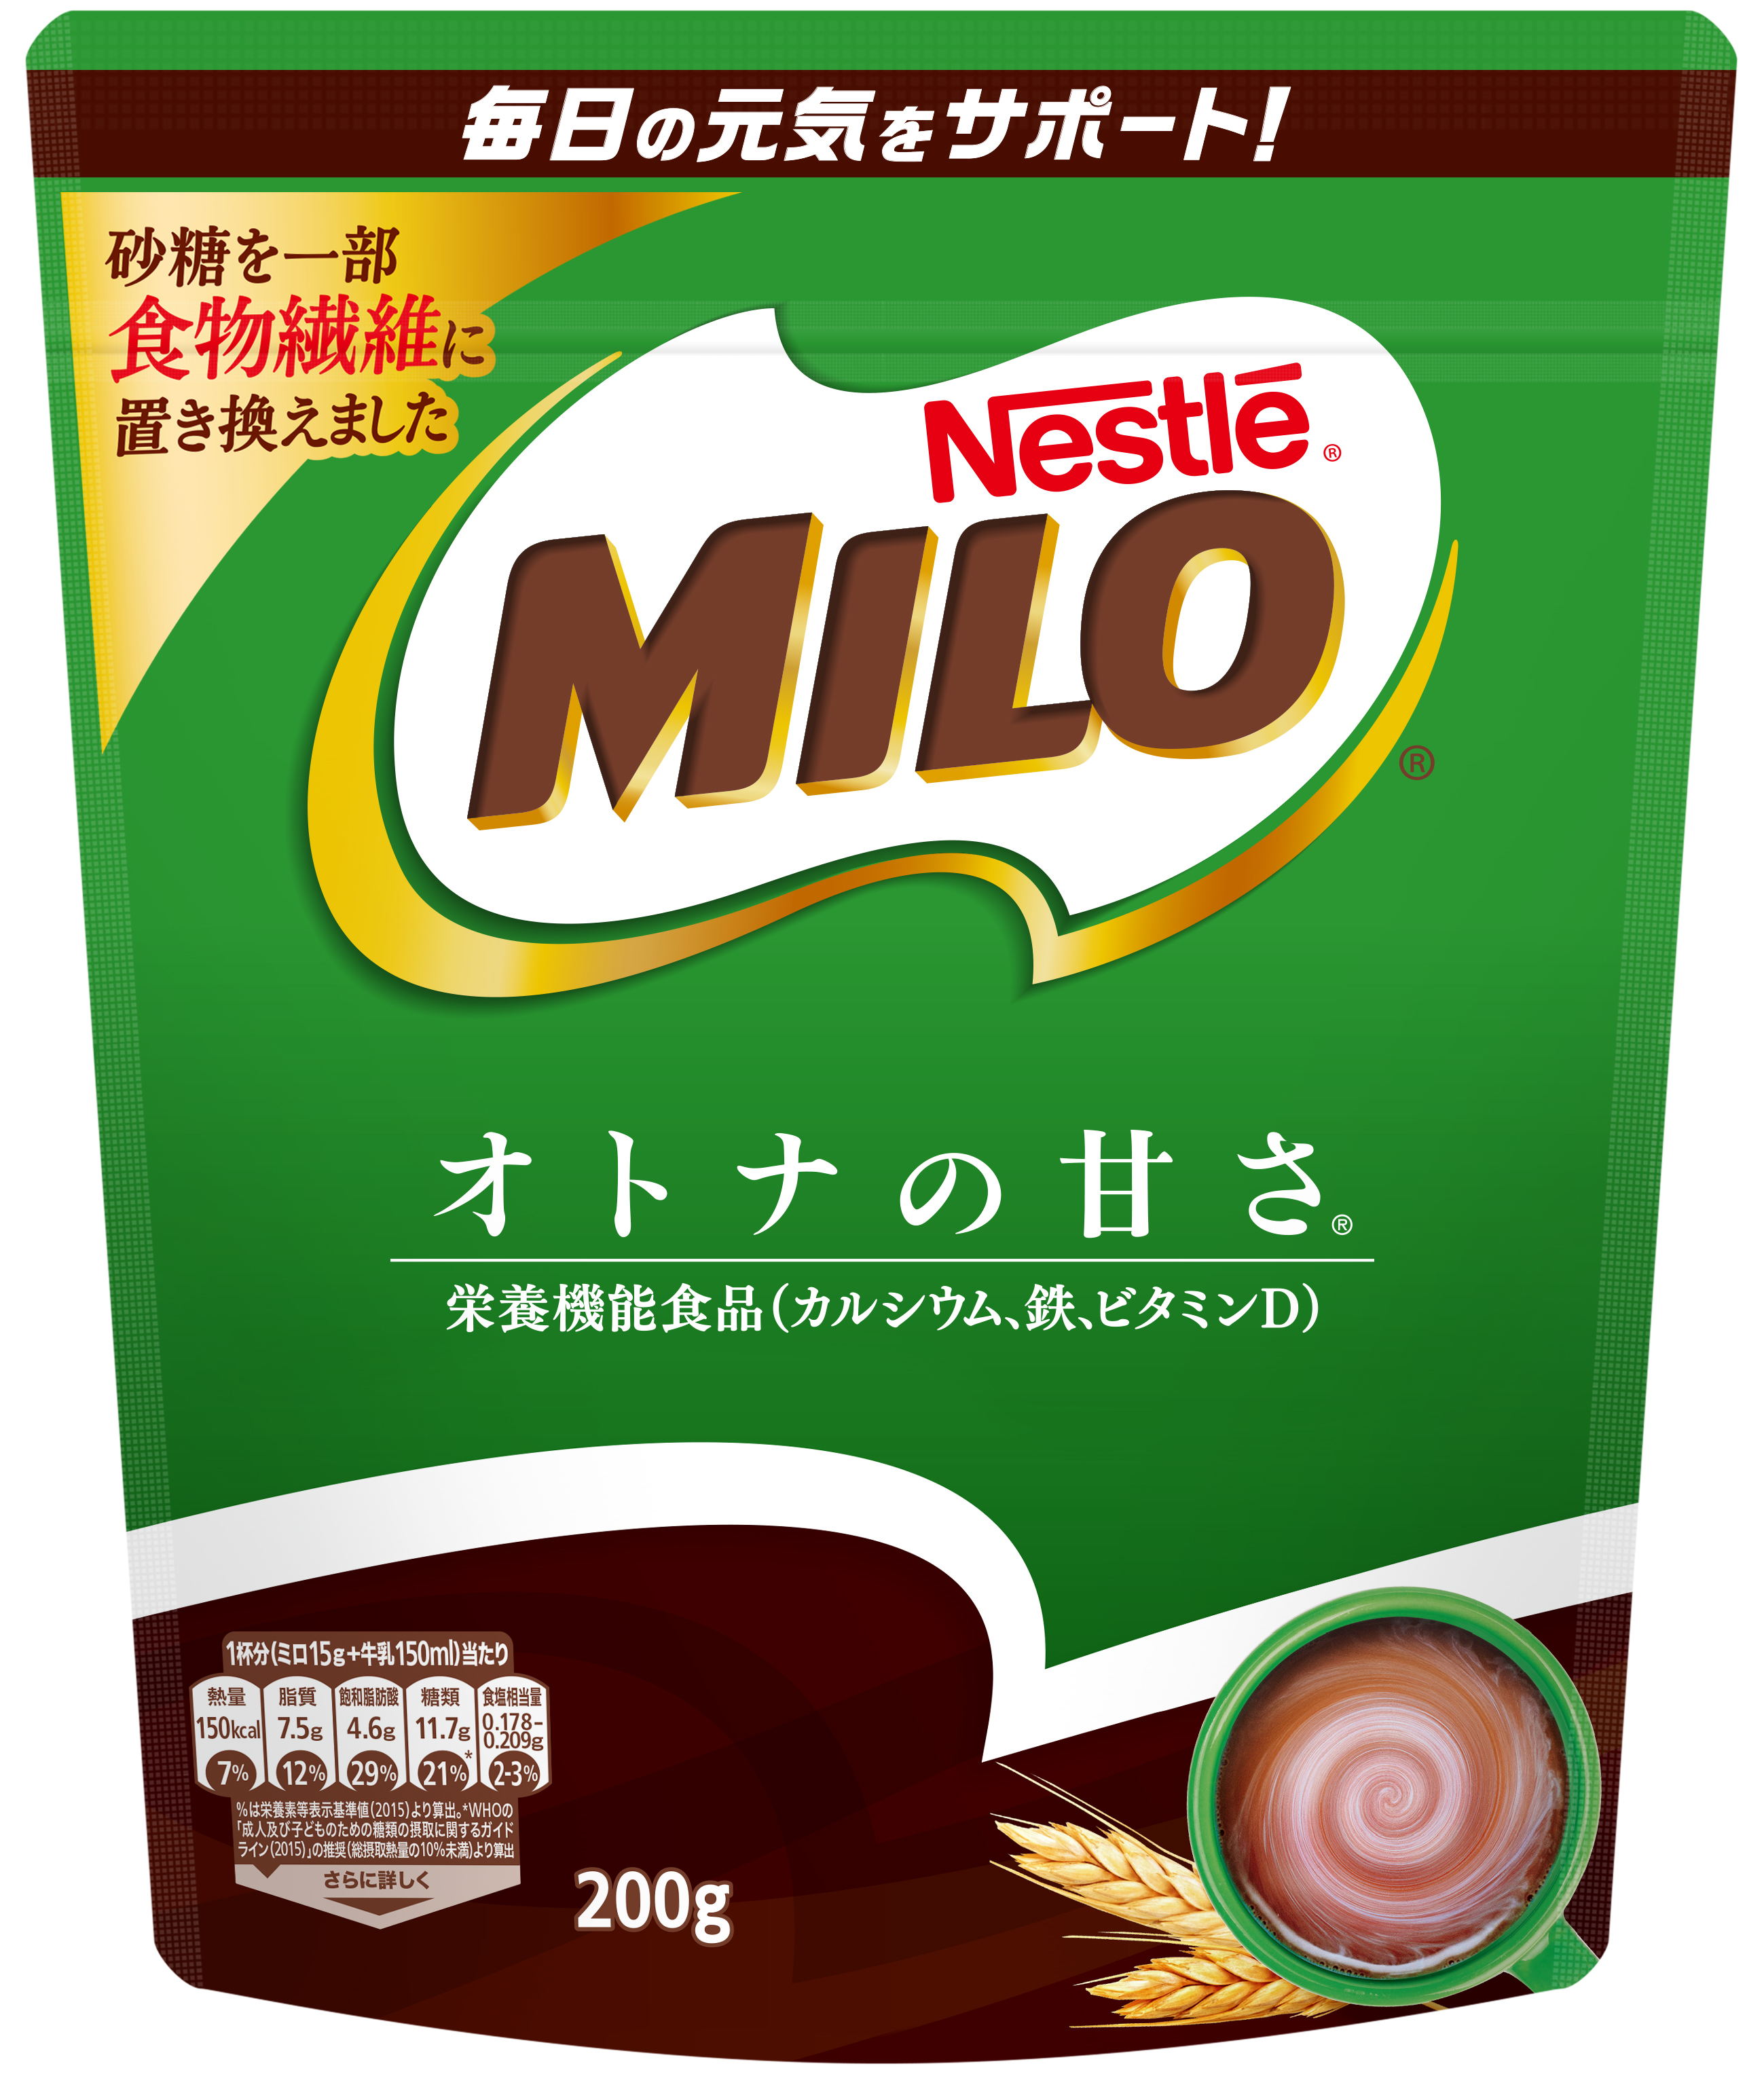 ネスレ ミロ オトナの甘さ 200g | ネスレ日本 製品情報サイト